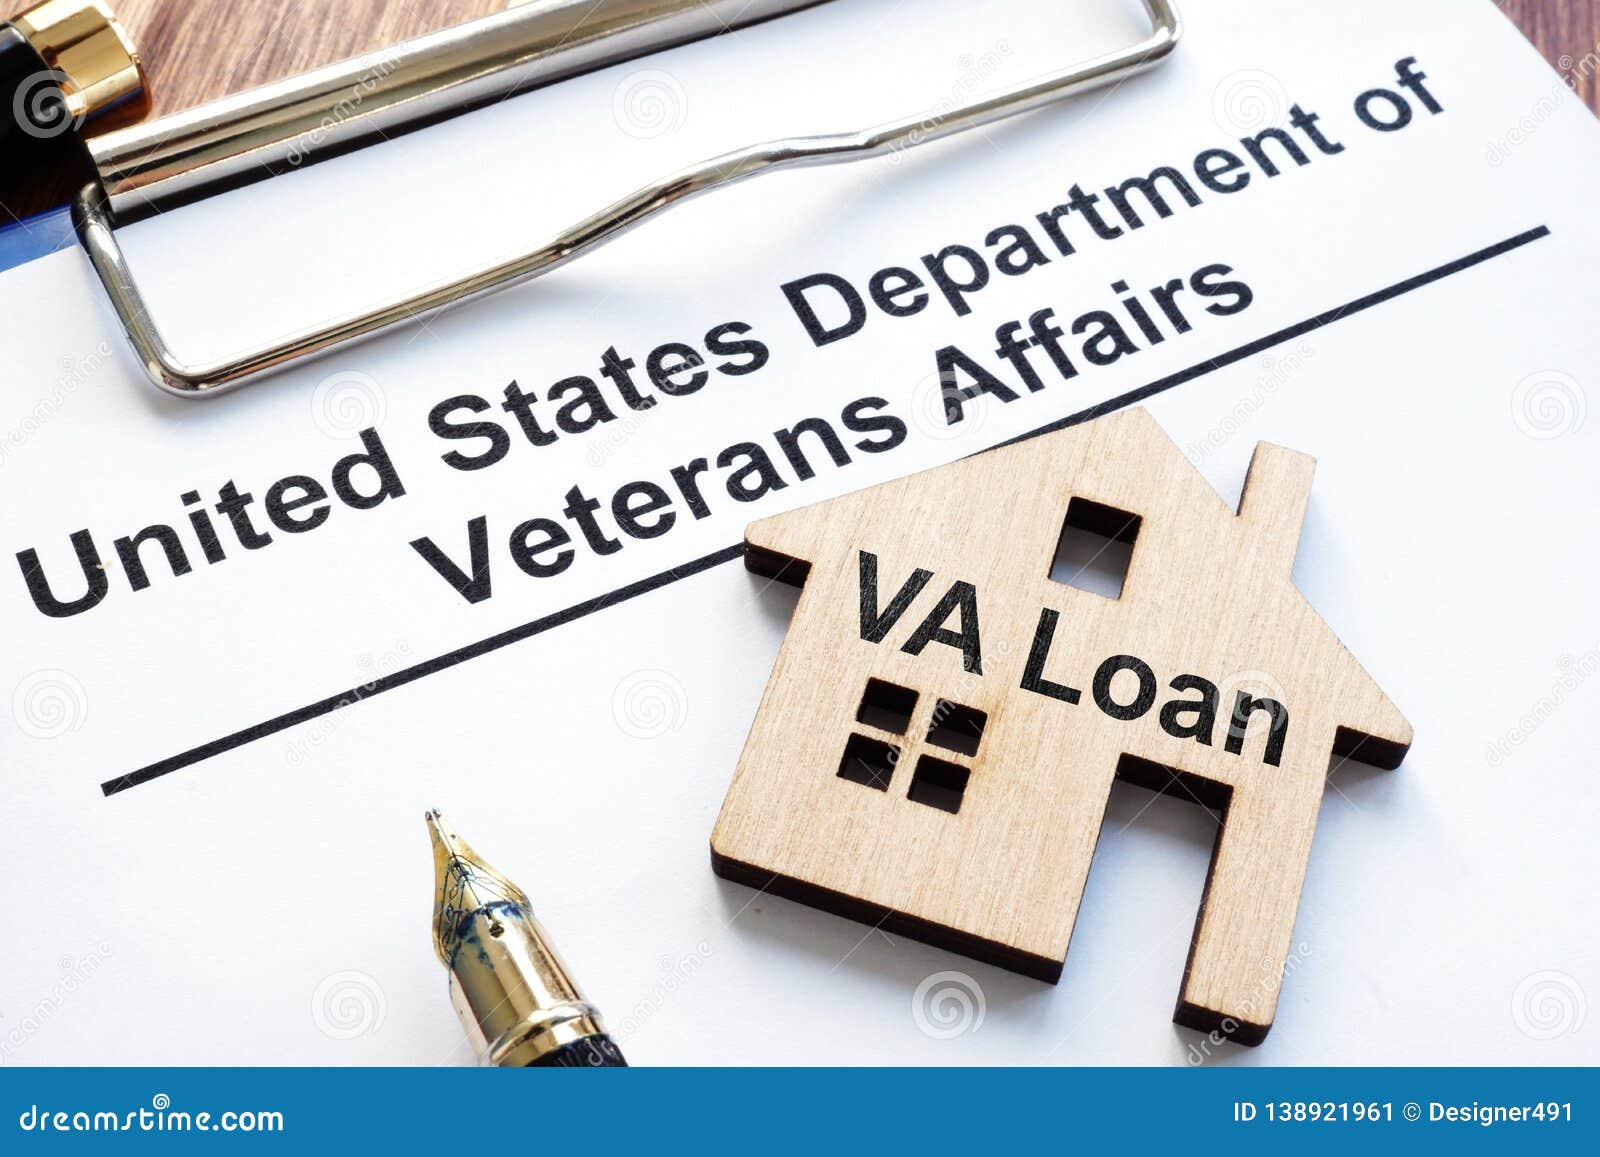 va loan. us department of veterans affairs papers